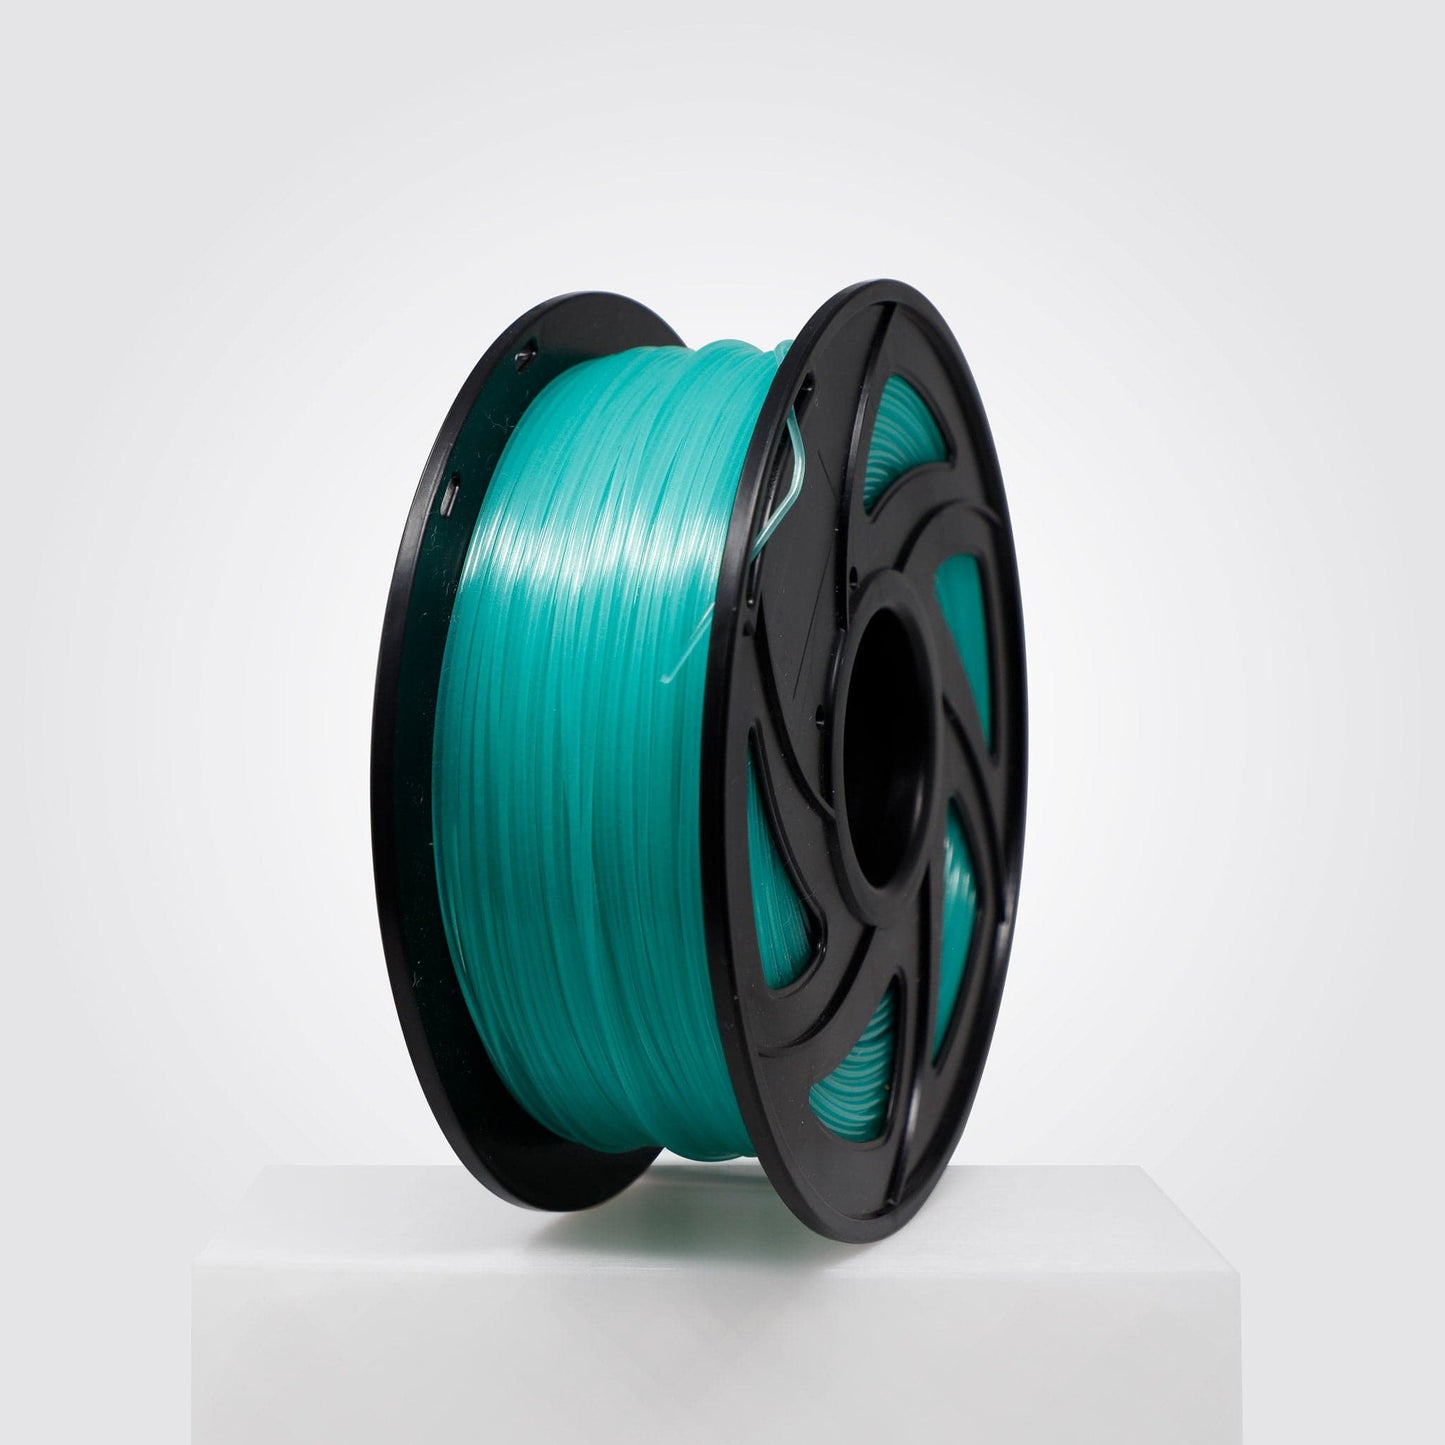 Green Glow PETG Filament 1.75mm - California Filament